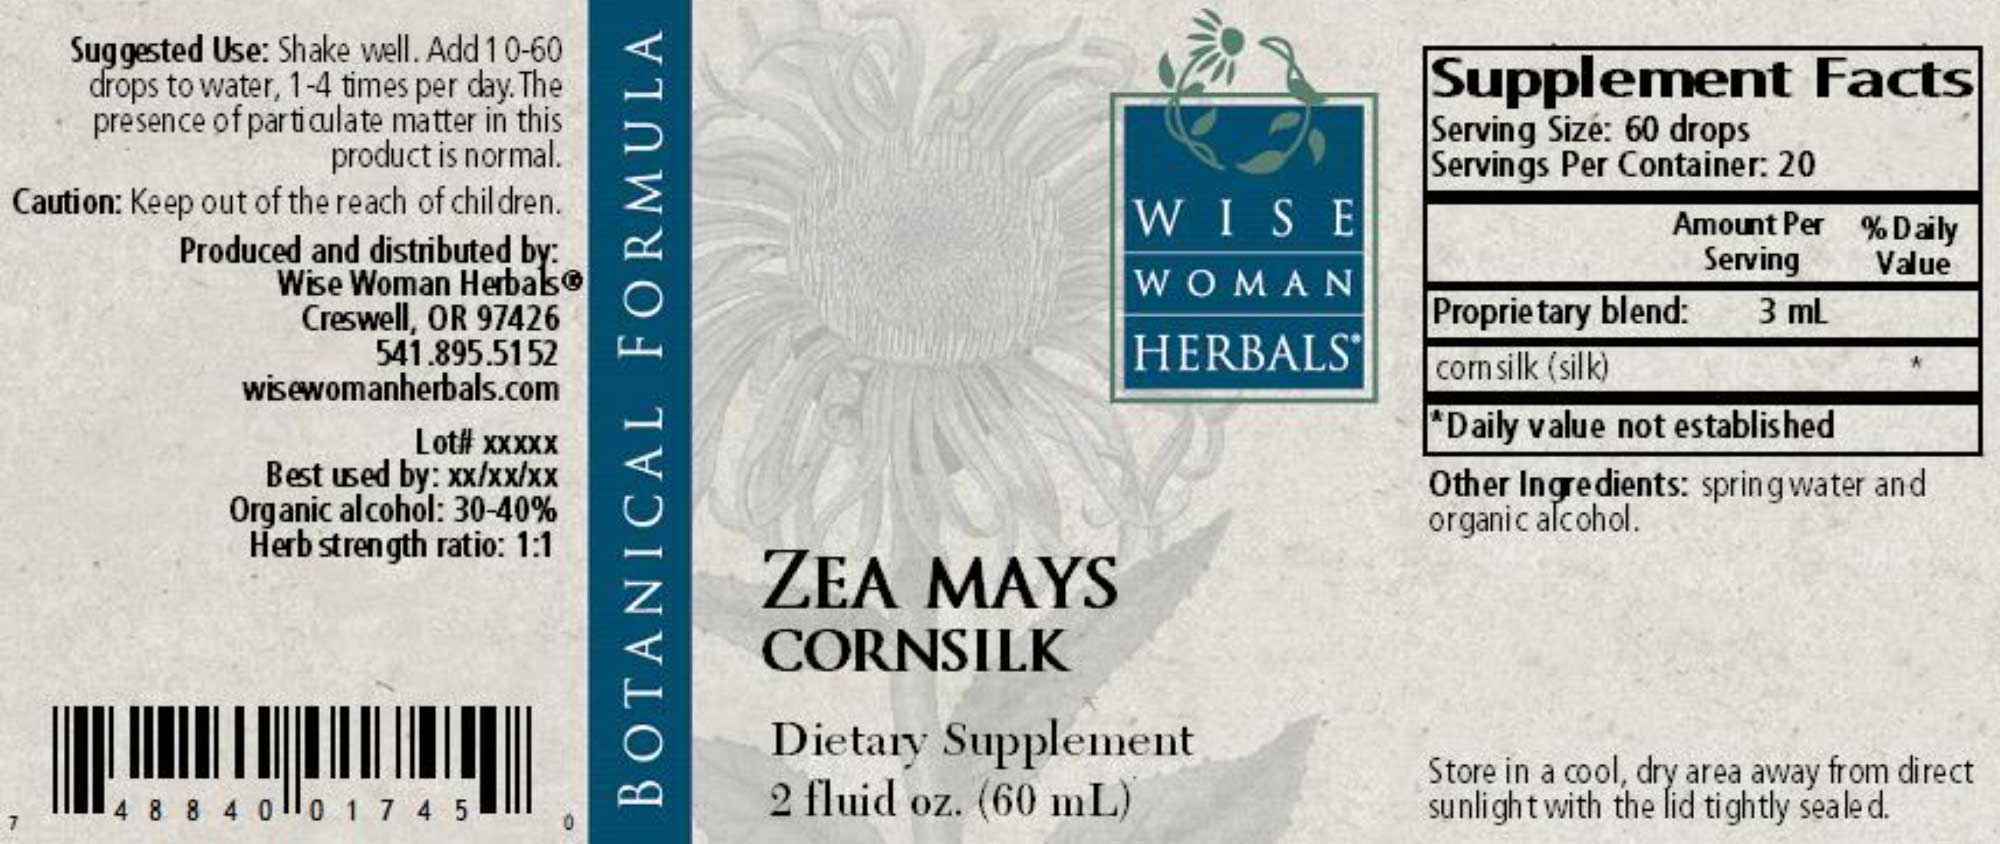 Wise Woman Herbals Zea Mays Cornsilk Label